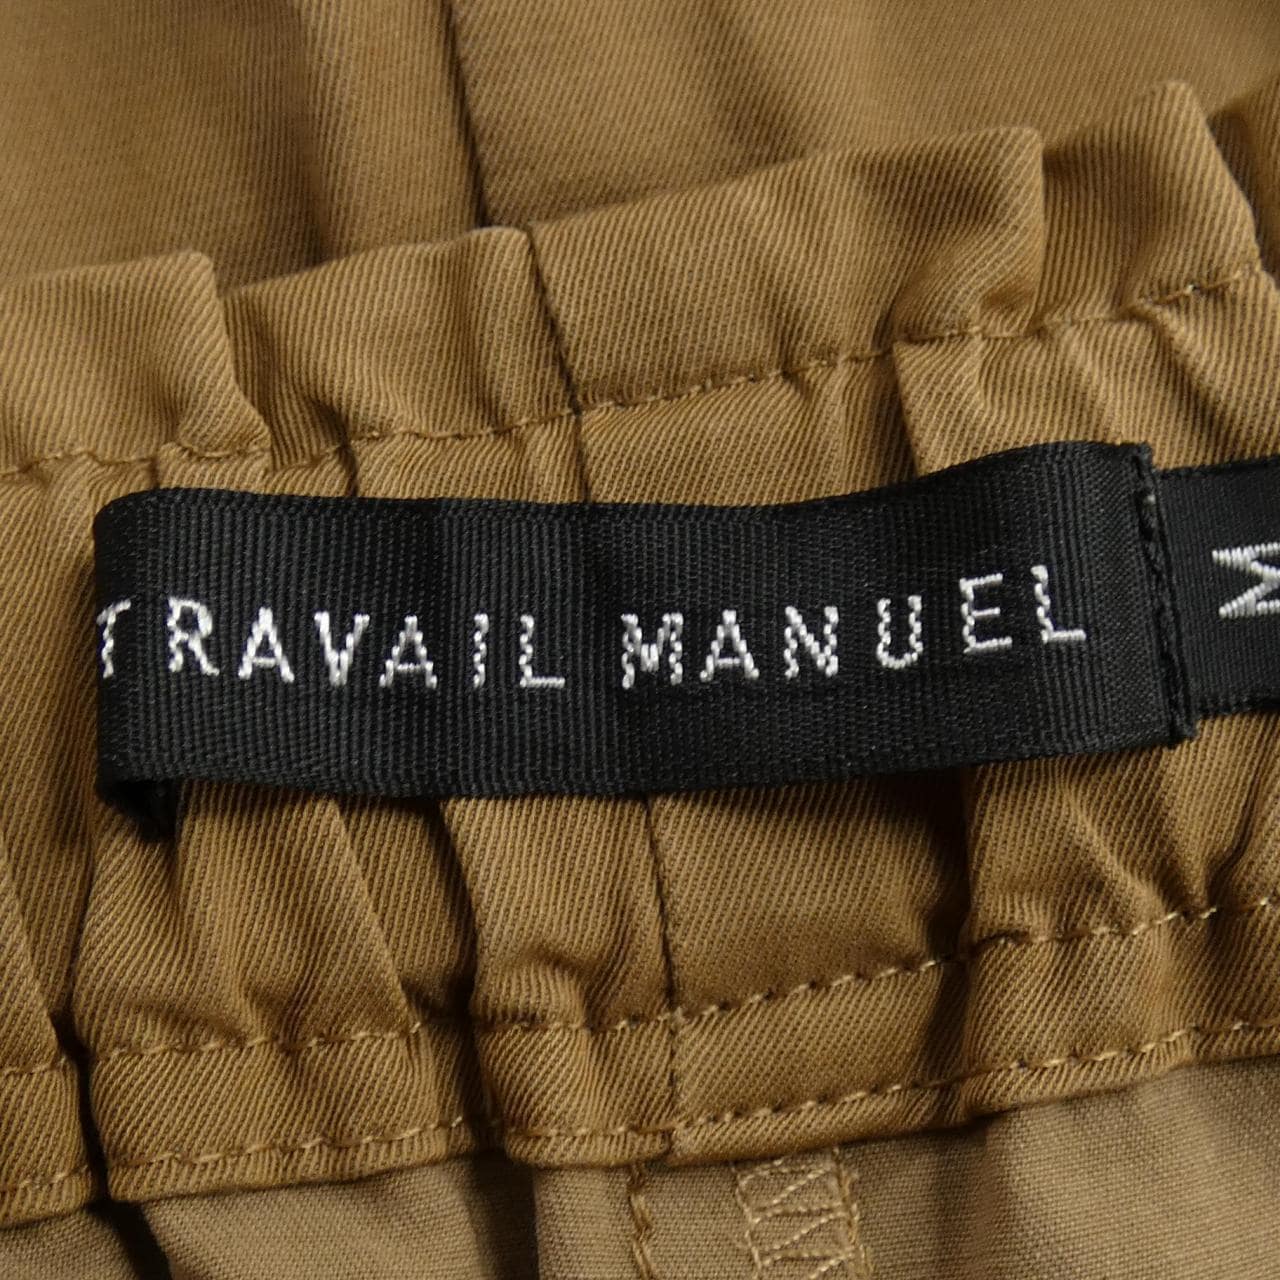 TRAVAIL MANUEL パンツ